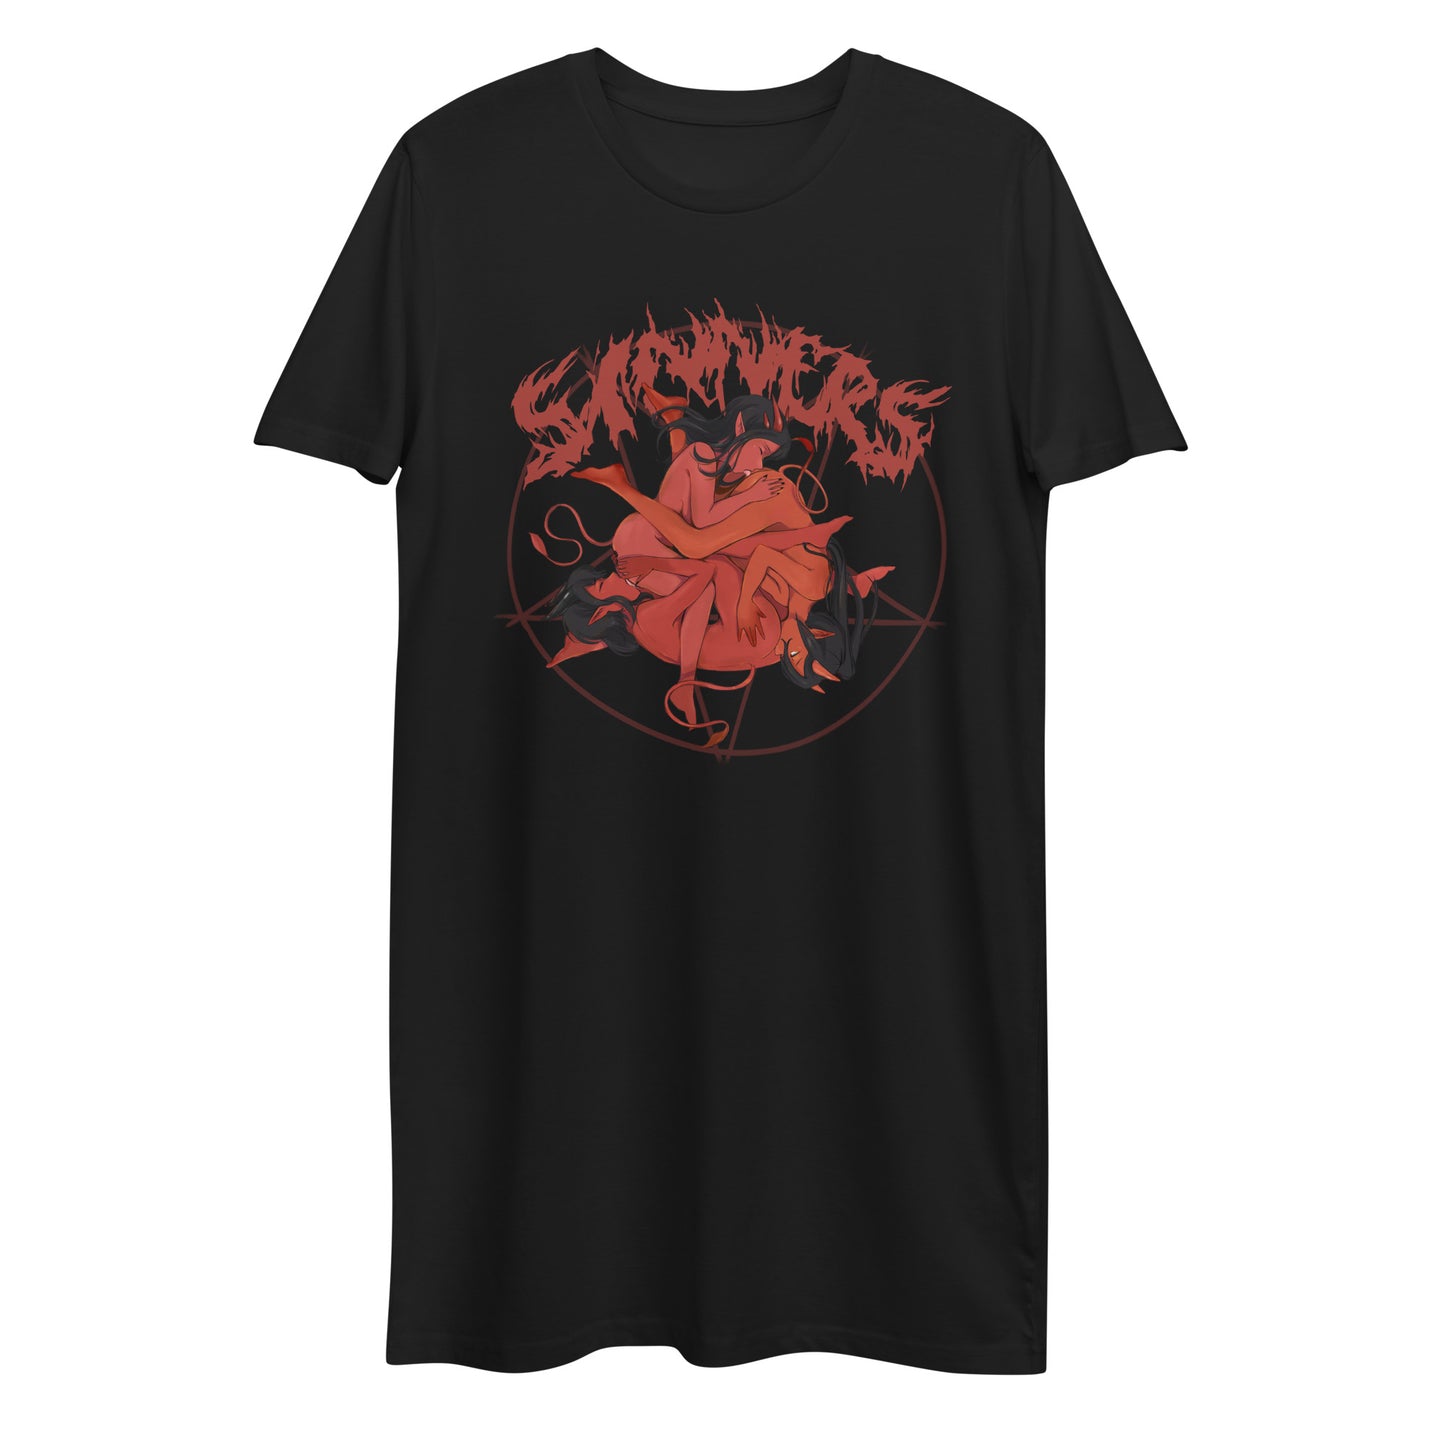 Sinners t-shirt dress